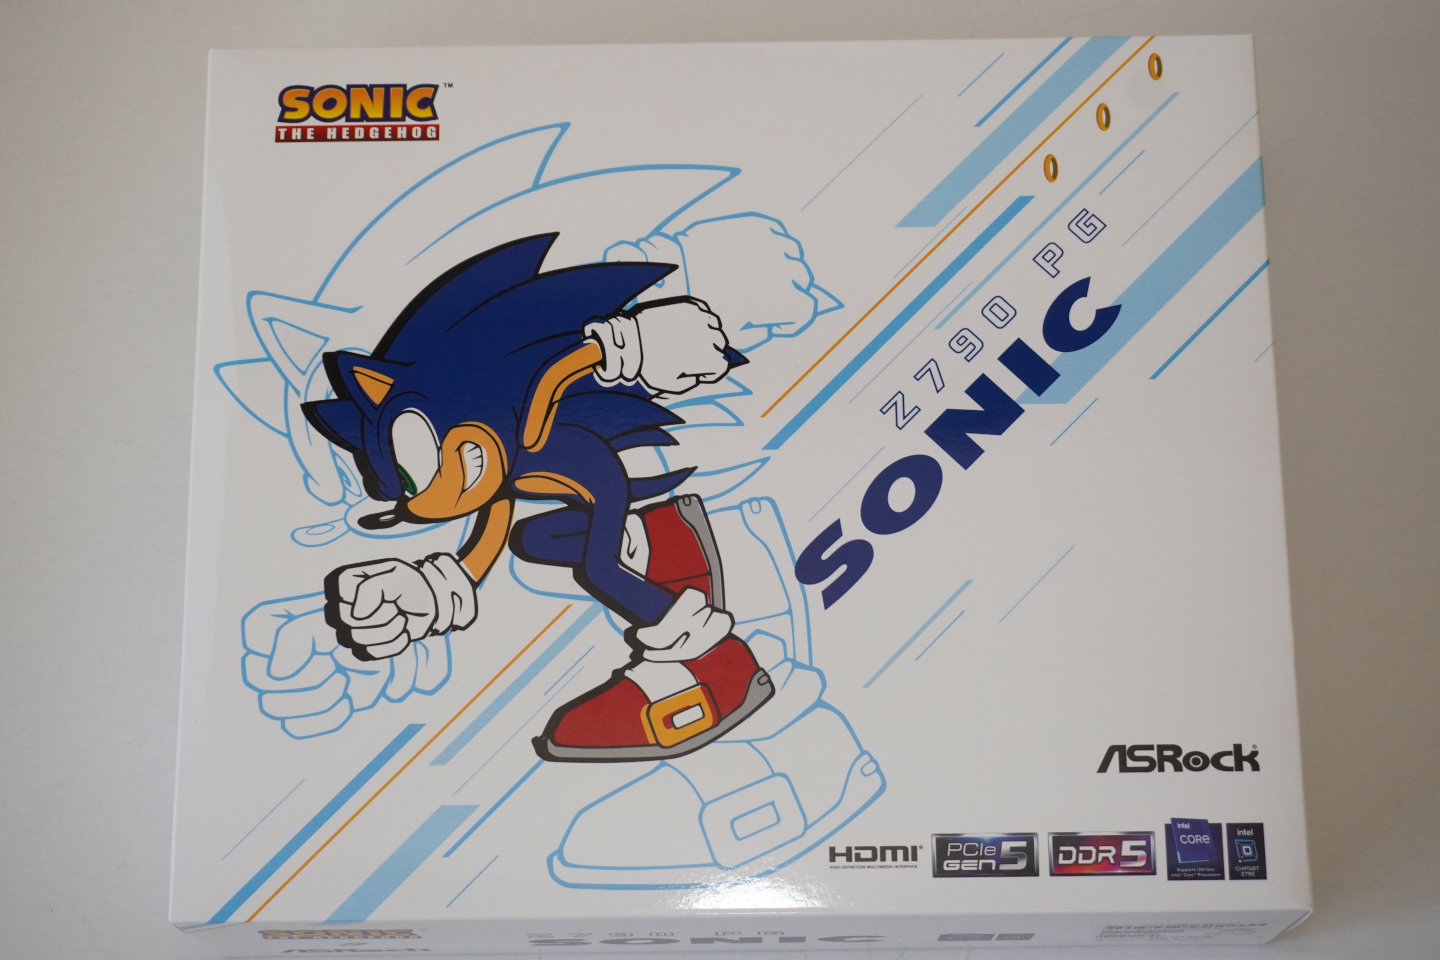 Z790 PG Sonic的包裝盒具有帥氣的音速小圖案。